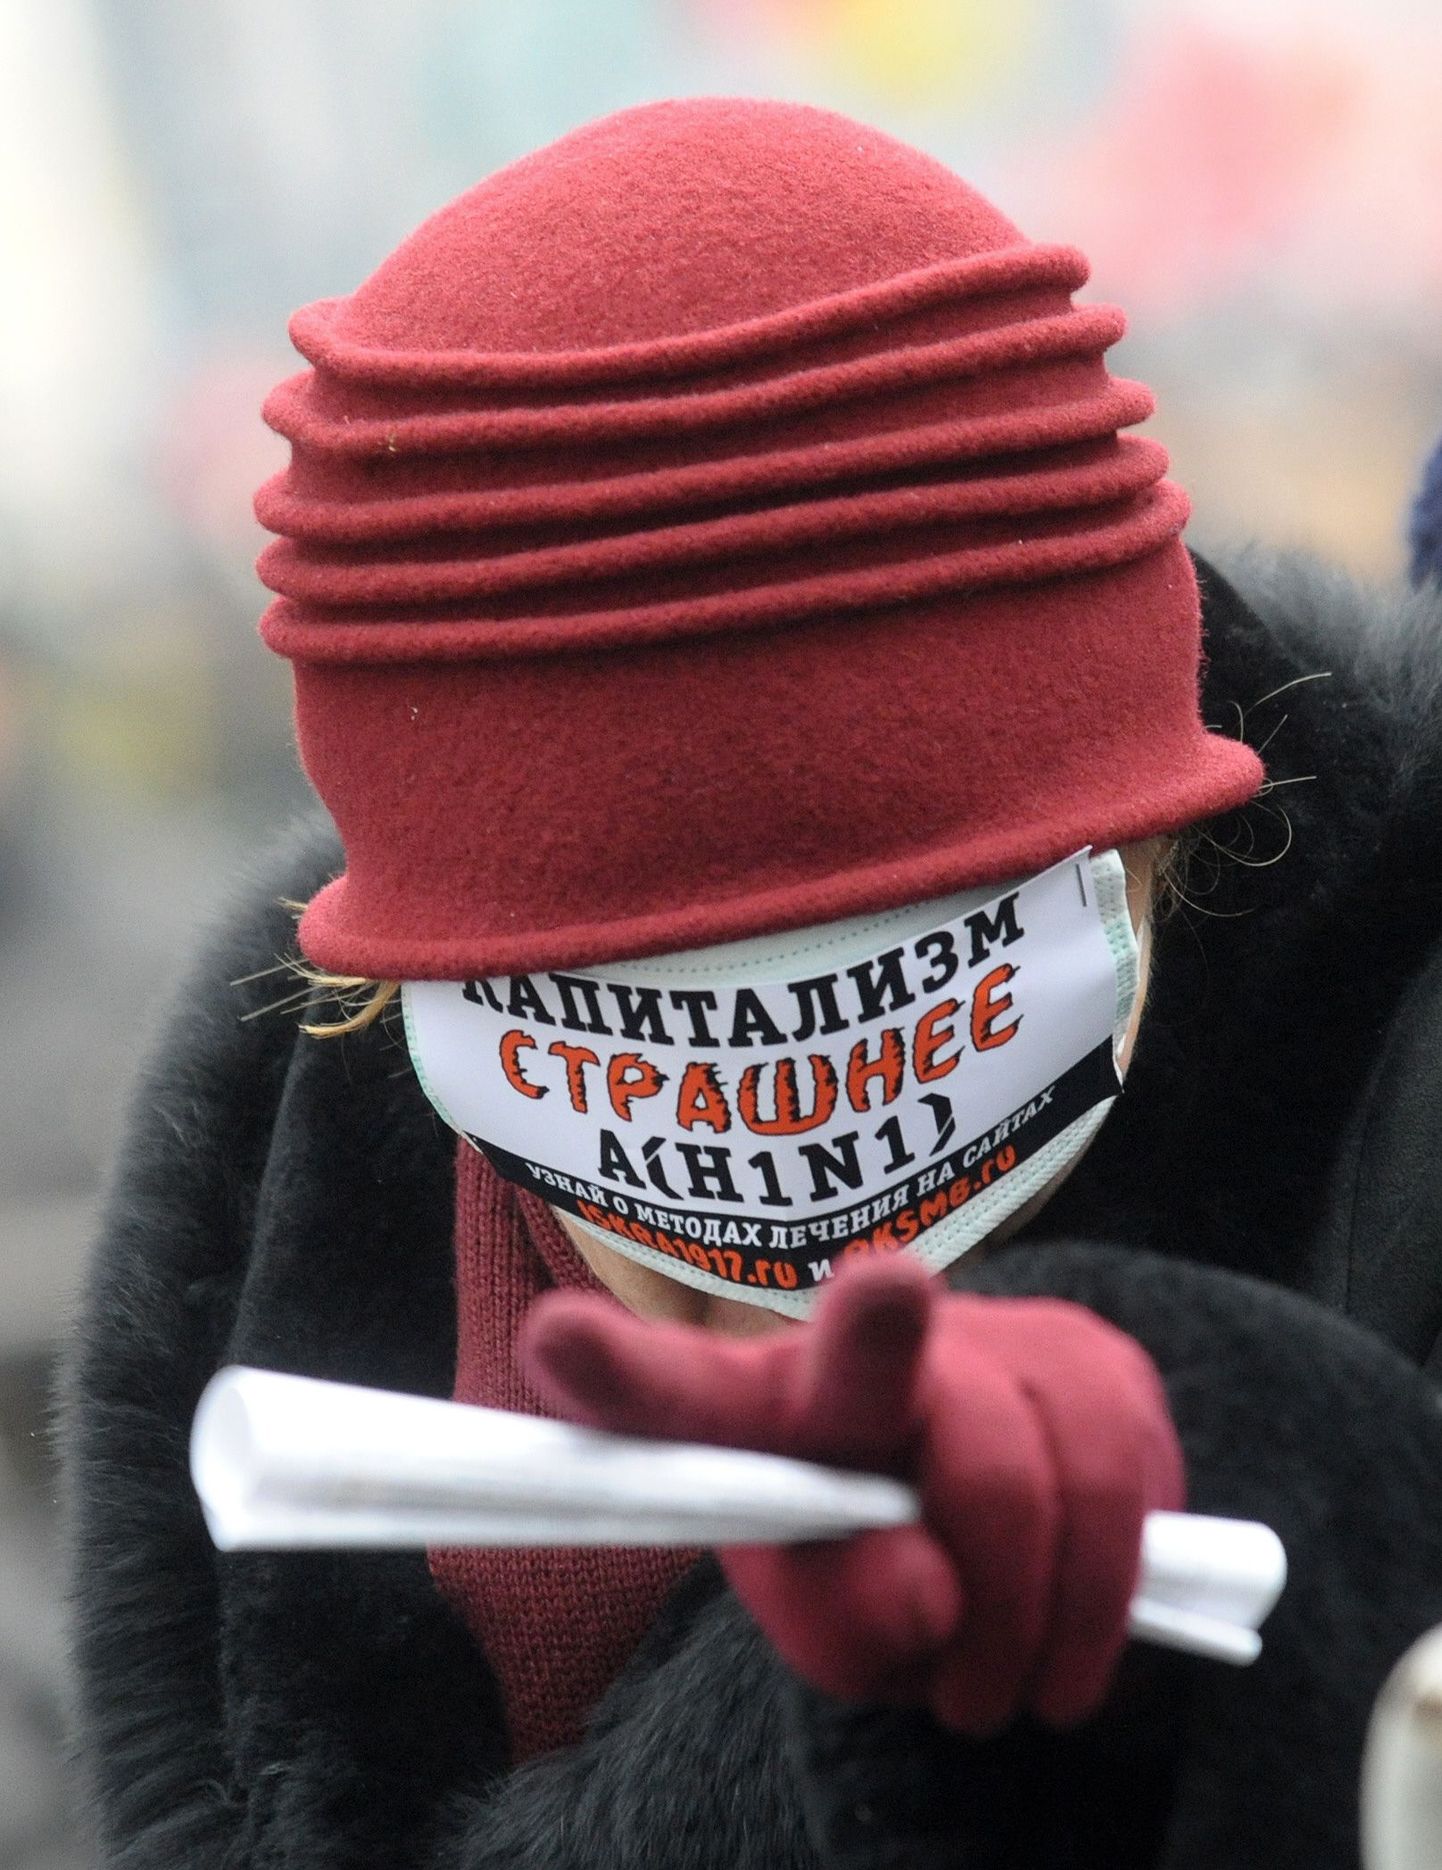 Сторонница коммунистов на пикете в Москве. Надпись гласит: "Капитализм страшнее A/H1N1.